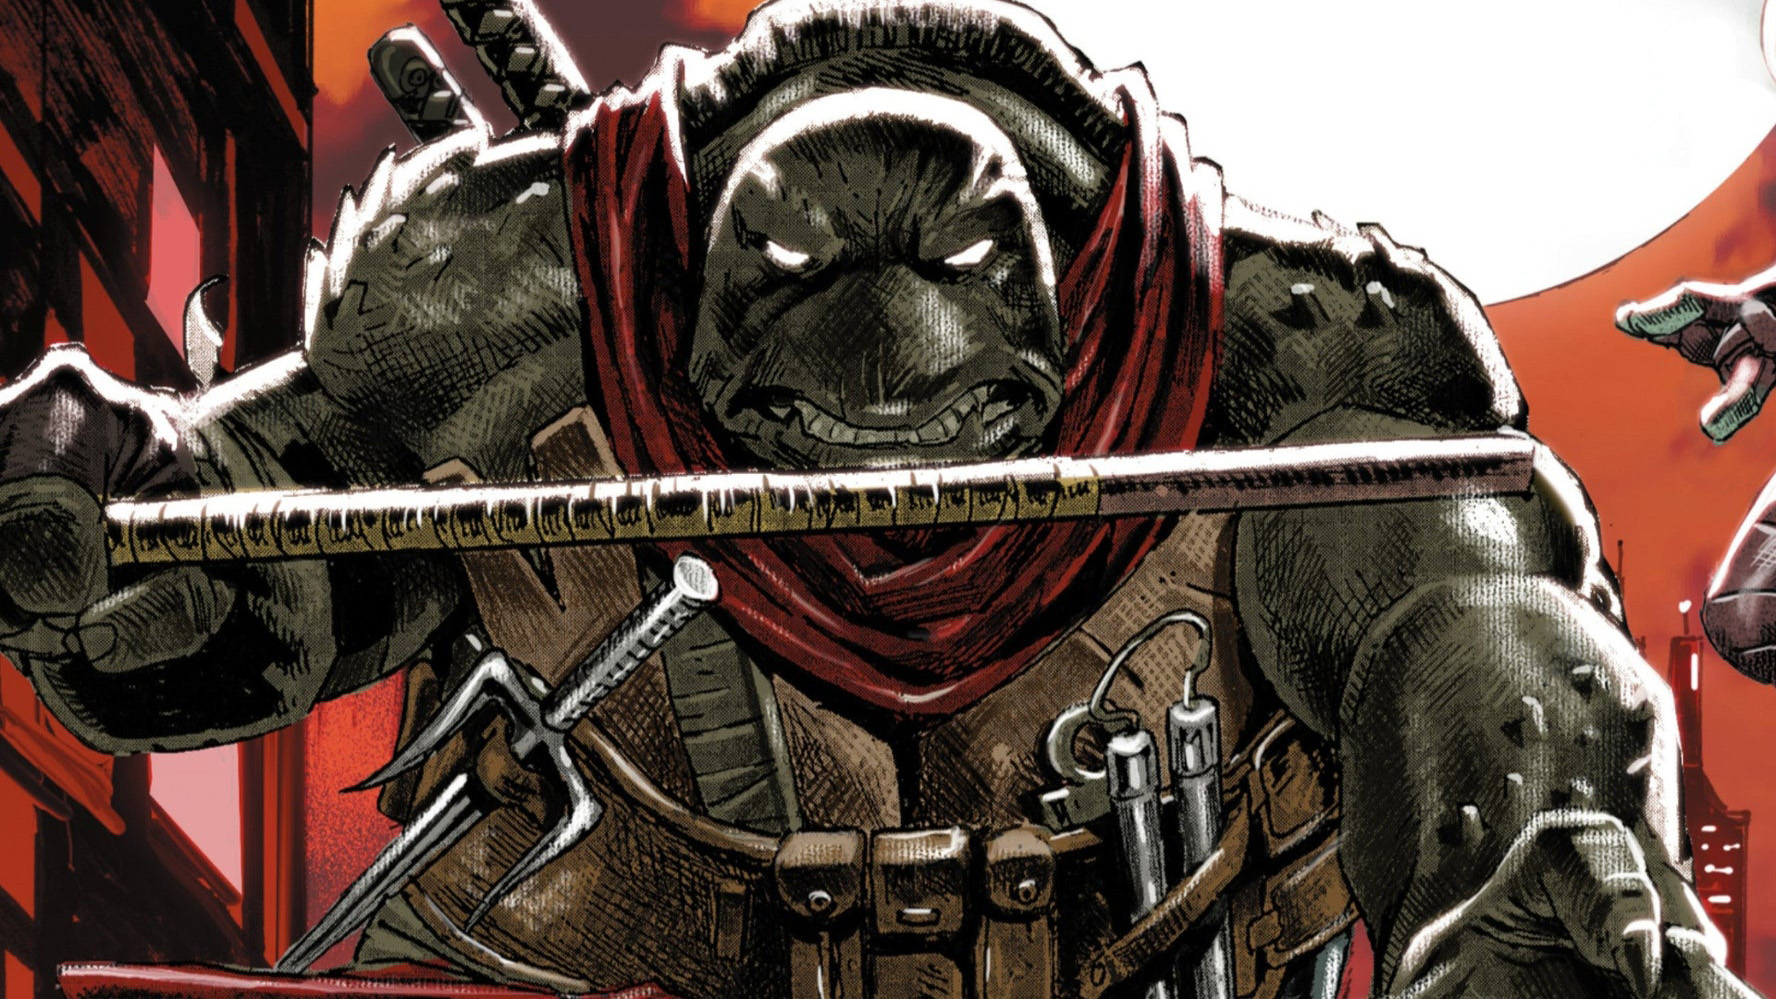 Kunst aus Teenage Mutant Ninja Turtles: The Last Ronin II – Re-Evolution #1